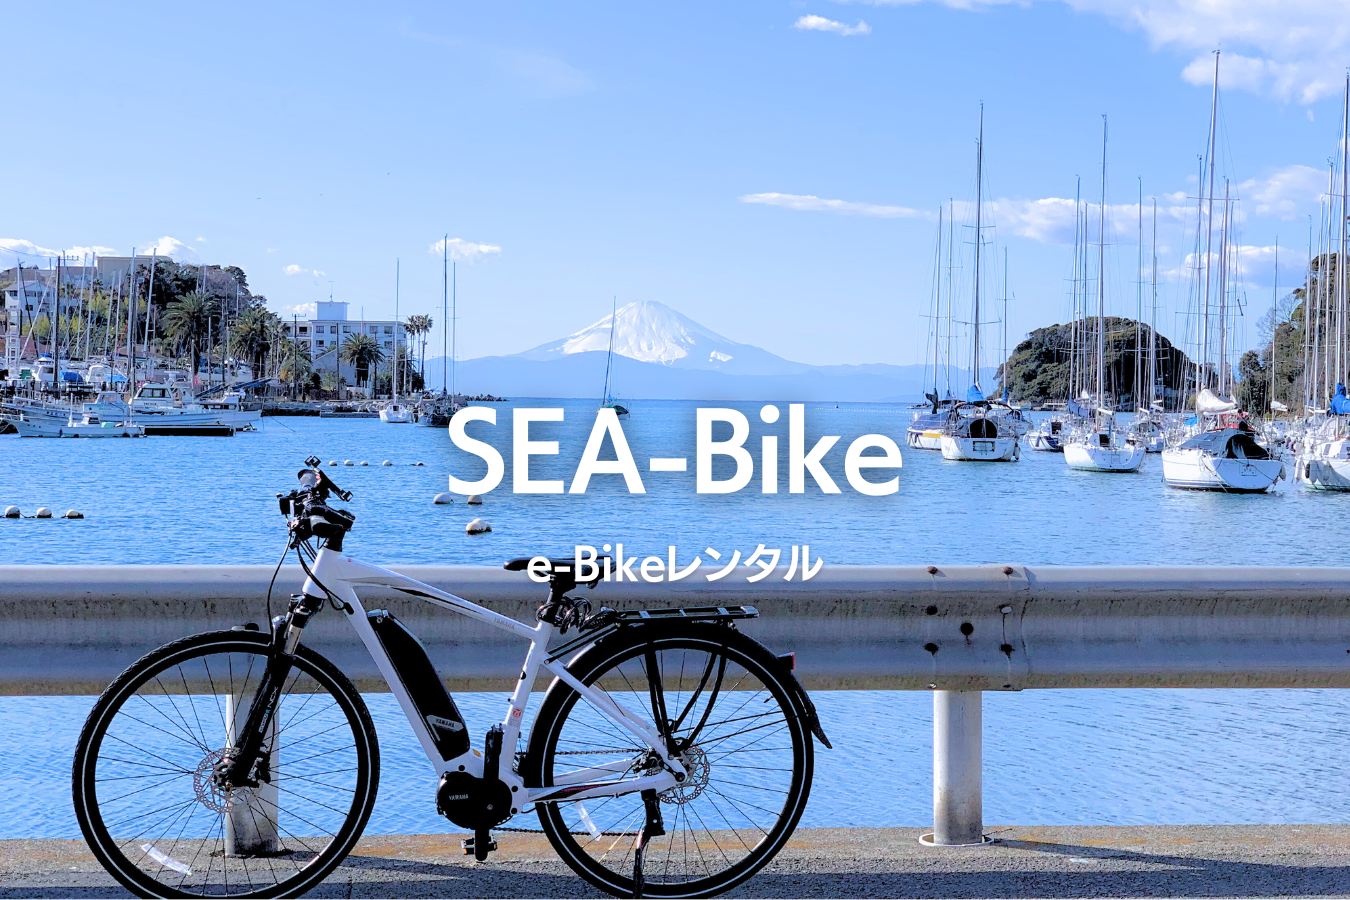 SEA-Bike